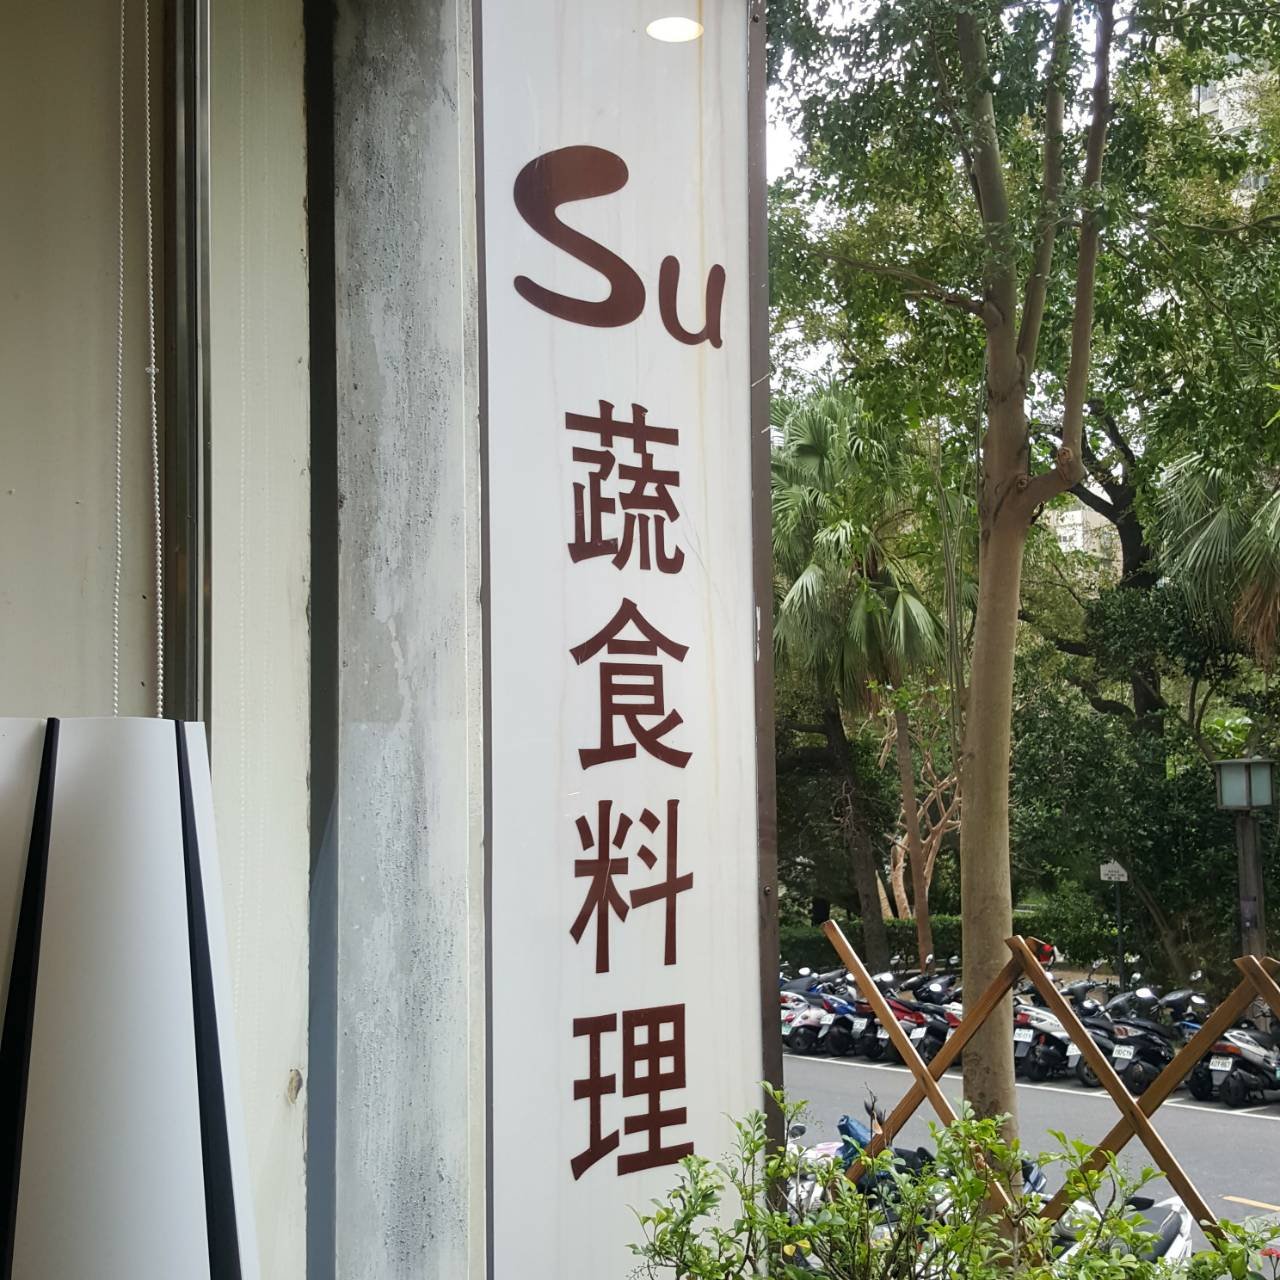 ร้าน Su ซูสือเลี่ยวหลี่ ร้านอาหารมังสวิรัติ ไต้หวัน